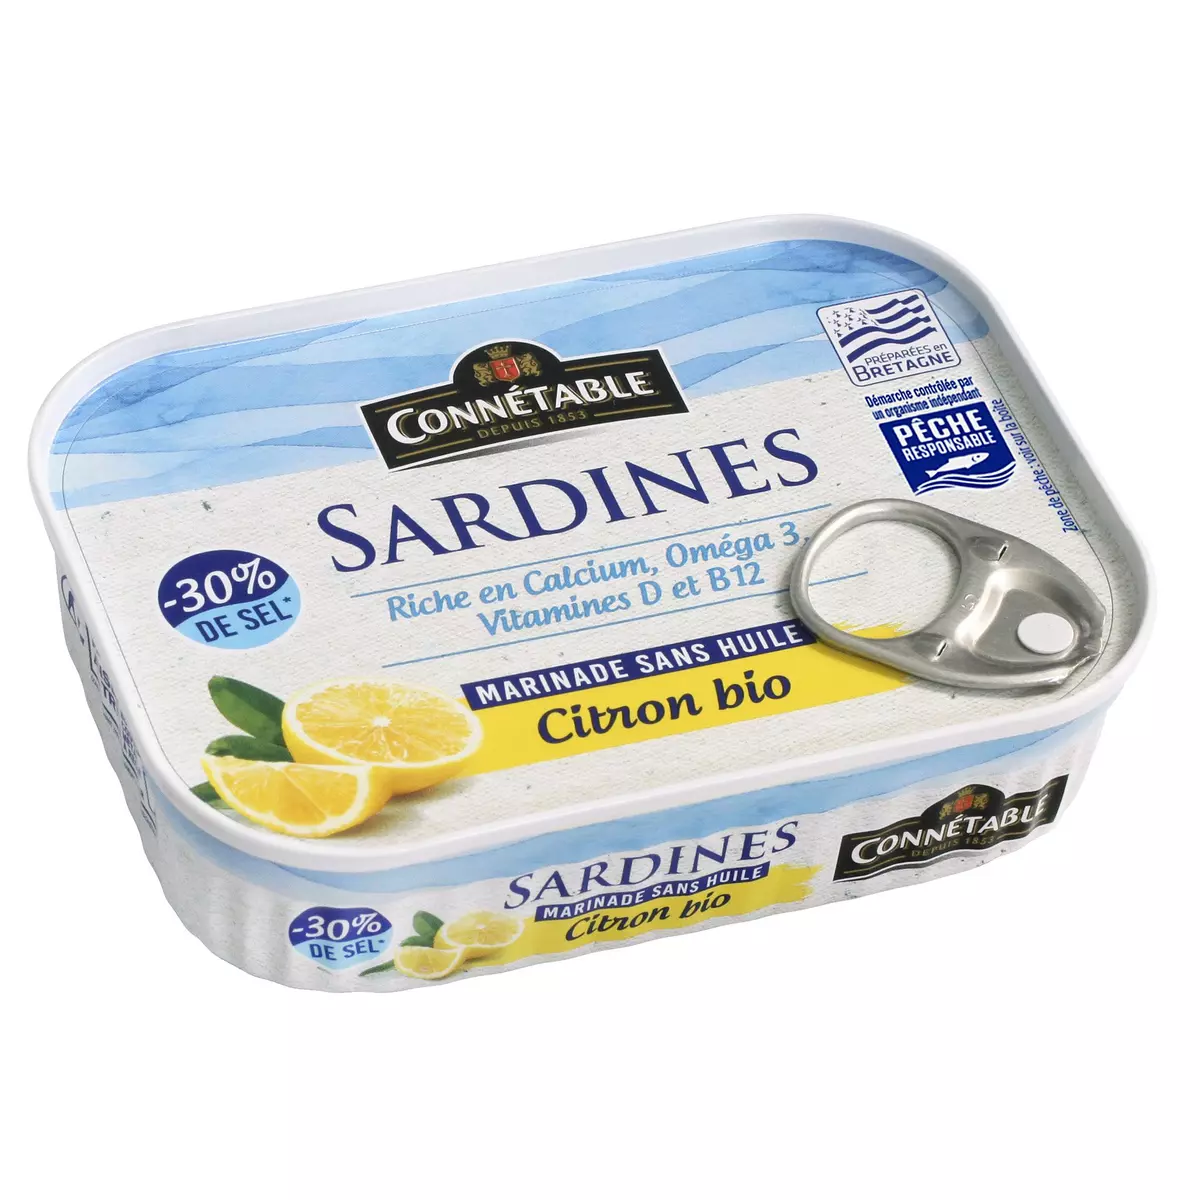 CONNETABLE Sardines marinade sans huile au citron bio -30% de sel 135g